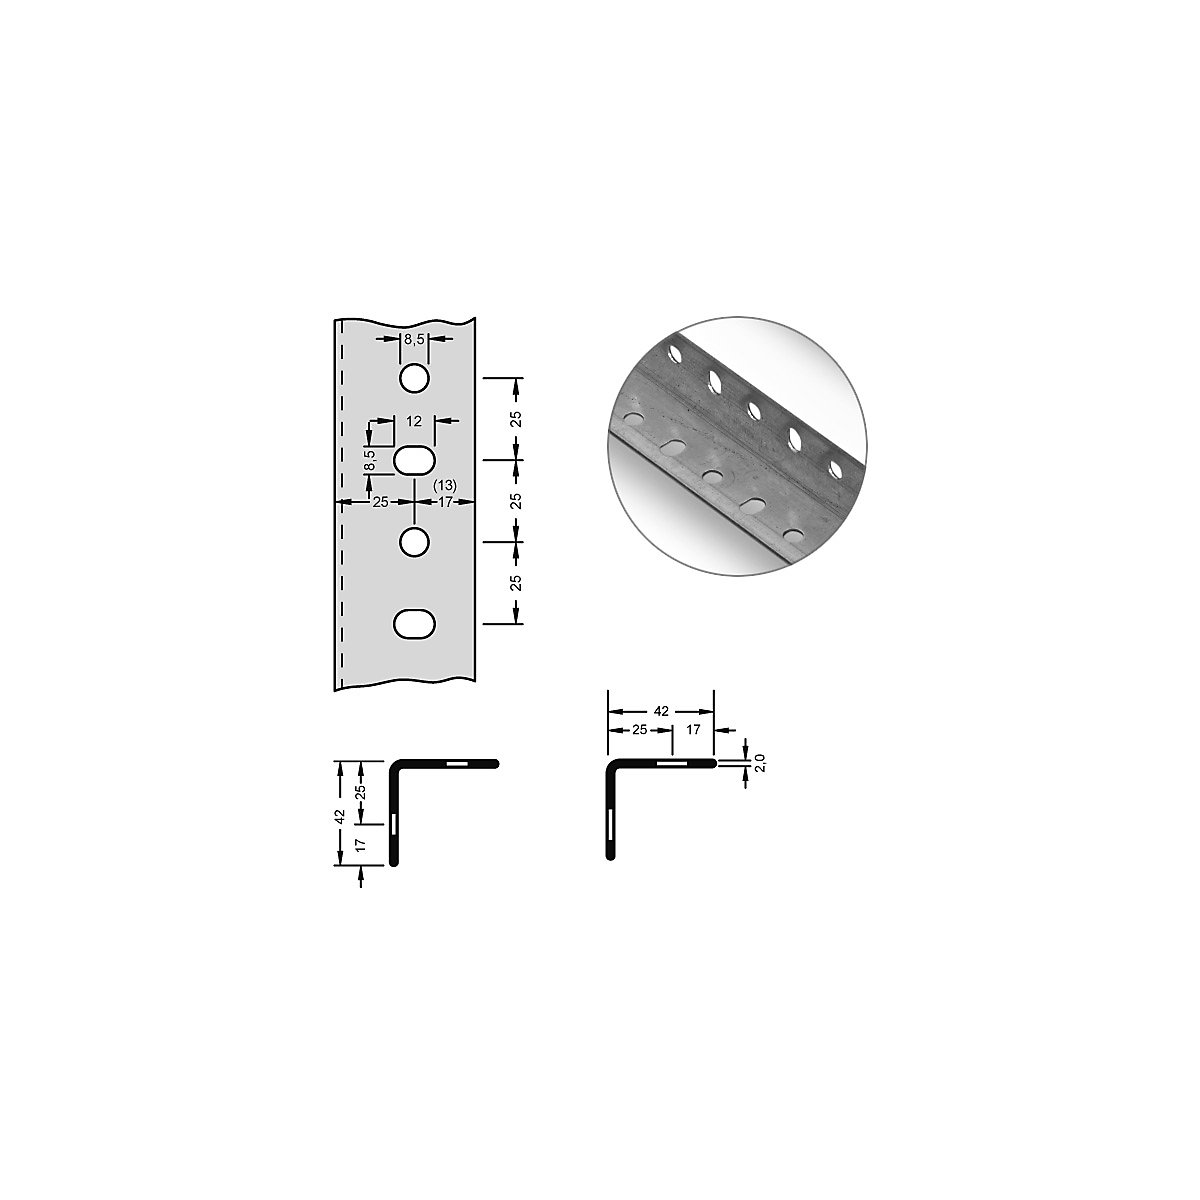 Stalowy profil narożny do systemu modułowego – hofe, 42 x 42 x 2 mm, dł. 3 m, ocynkowanie, opak. 6 szt.